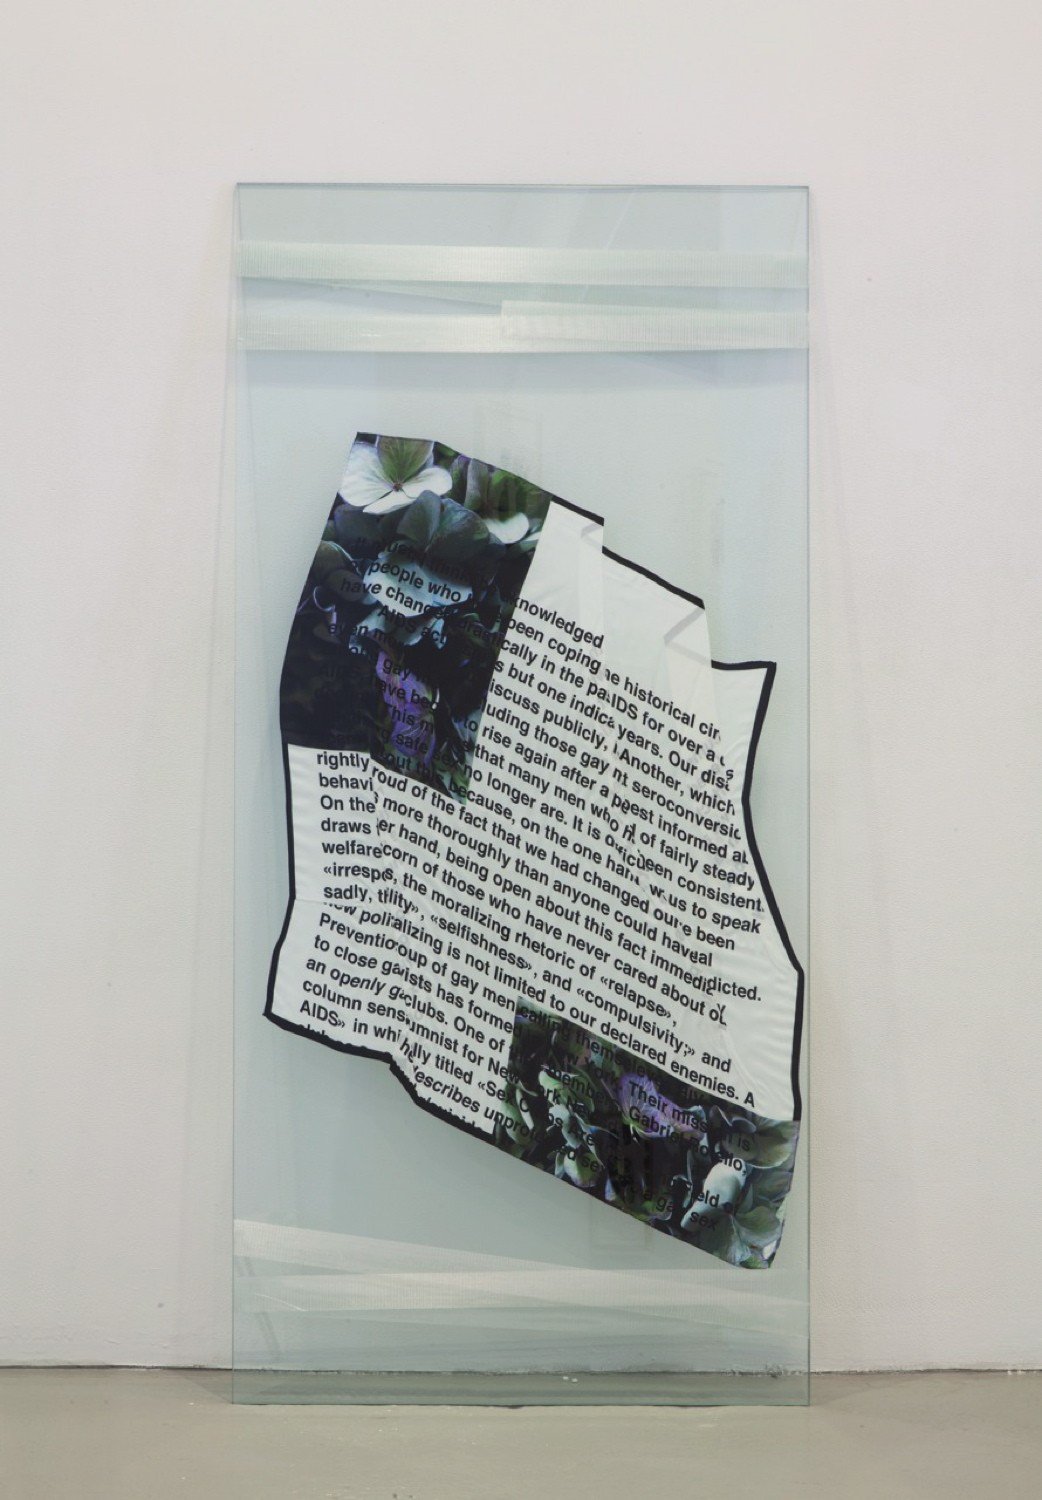 Lili Reynaud-DewarMy Epidemic, 2015Digital print on silk scarf, glass panels, duct tape172 x 85 cm